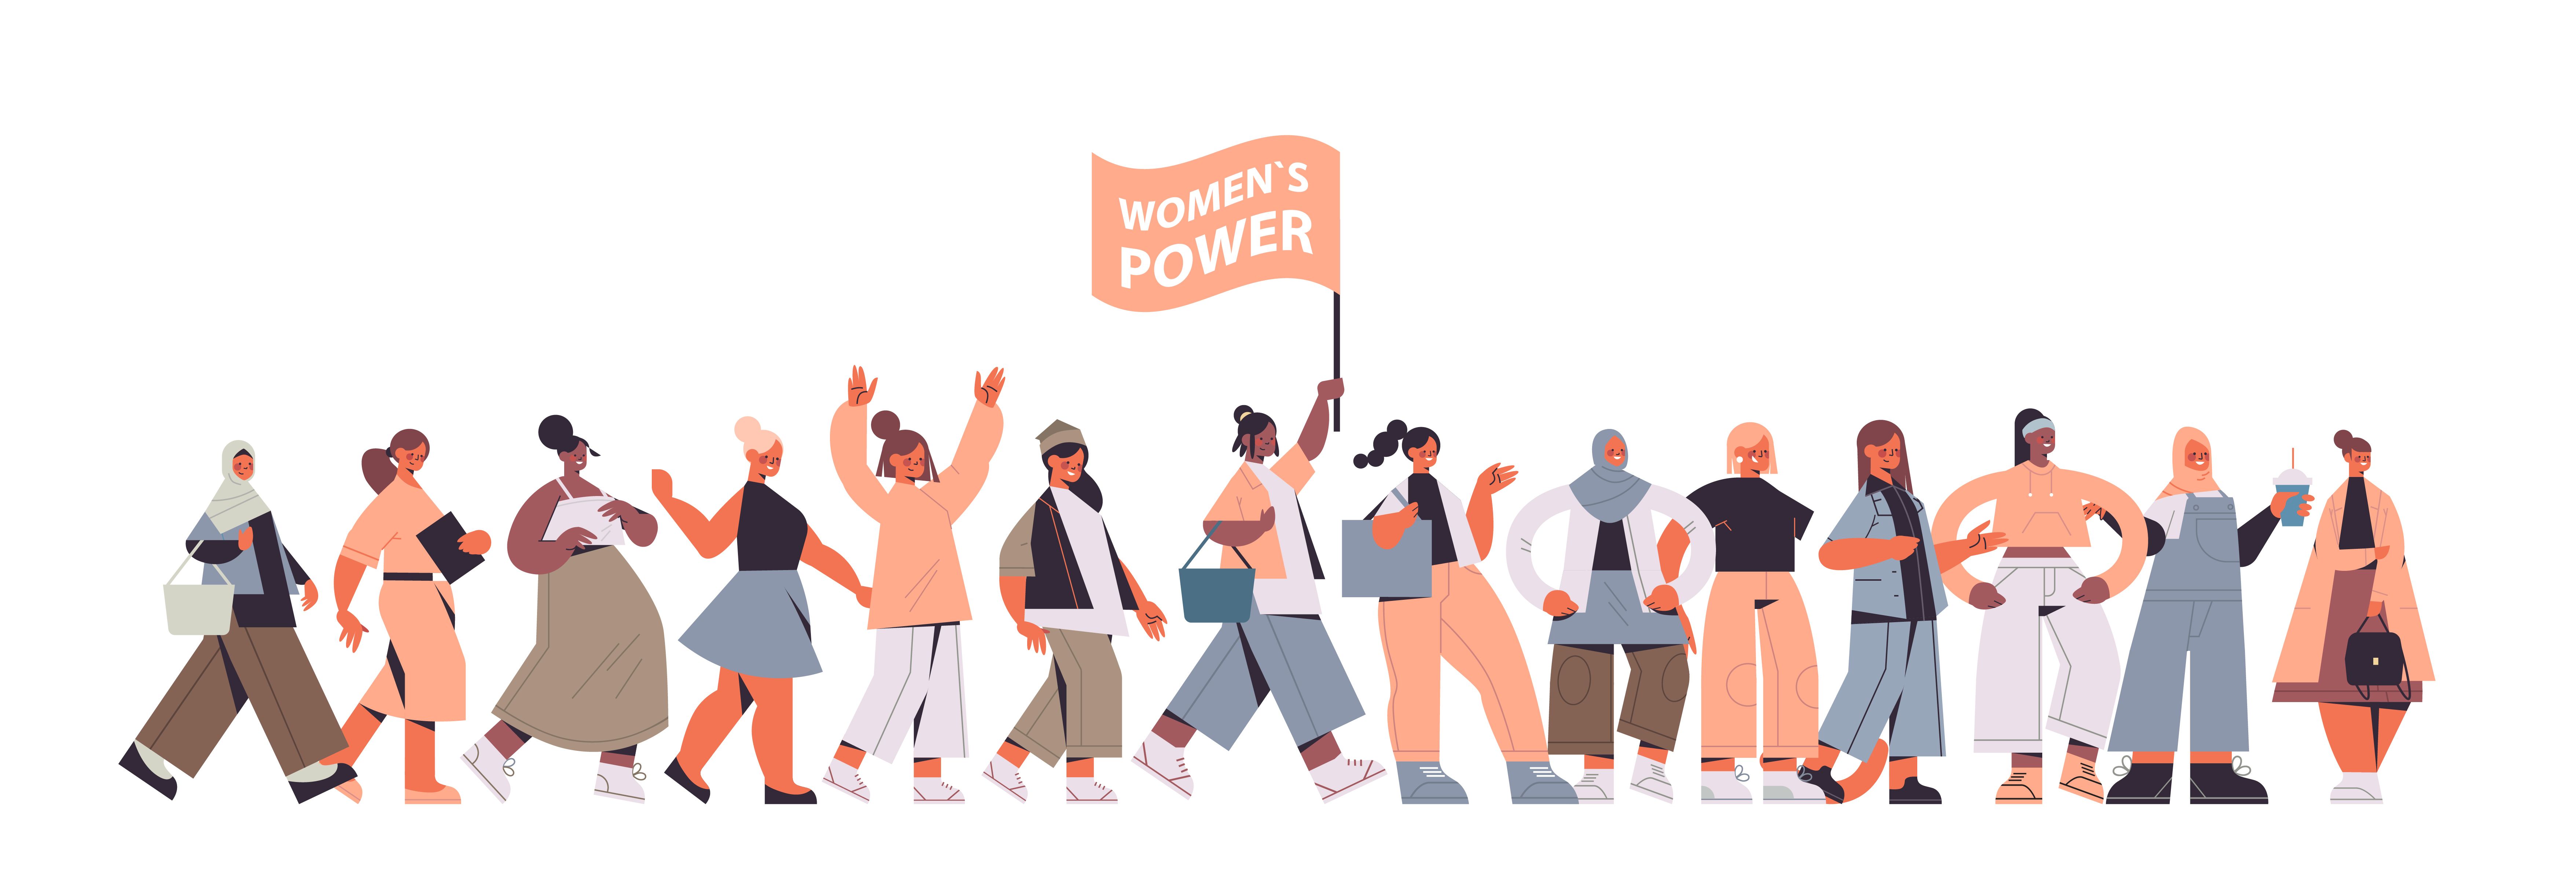 Illustration von Aktivistinnen mit Plakat: Women's Power